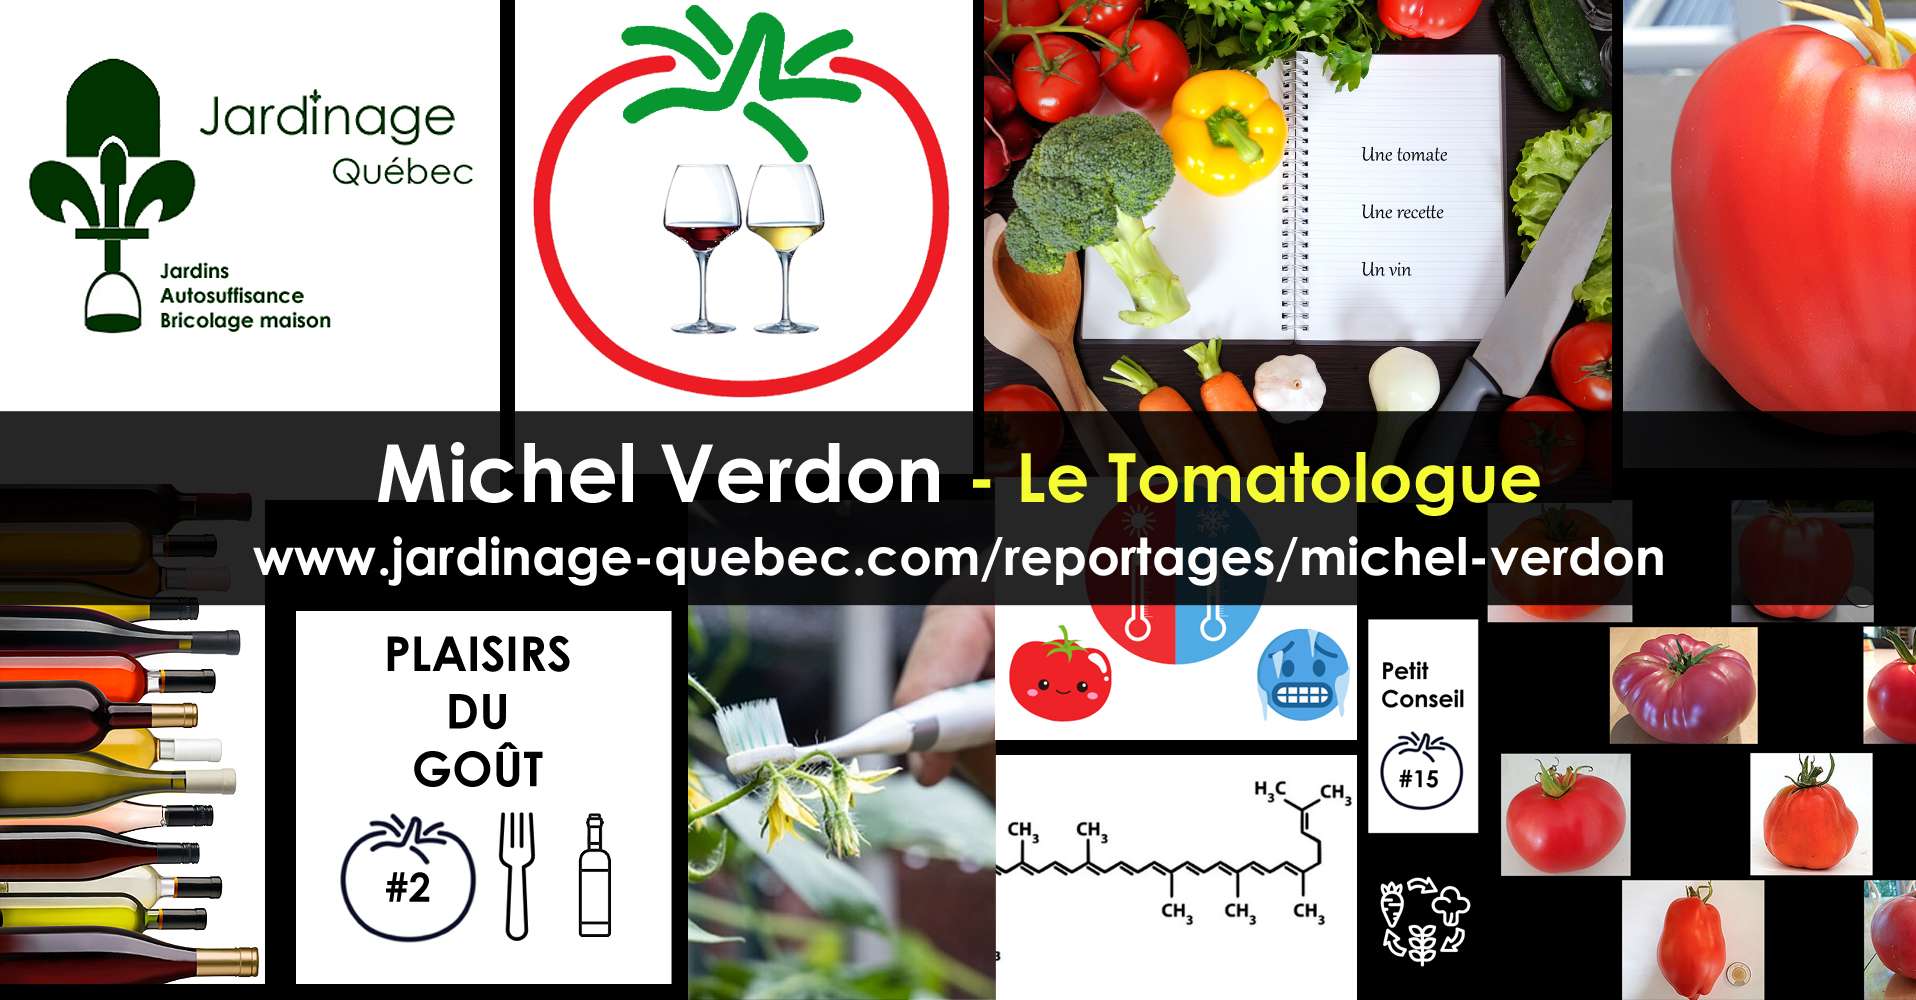 Meilleures Variétés de Tomates à Découvrir selon le Tomatologue Michel  Verdon